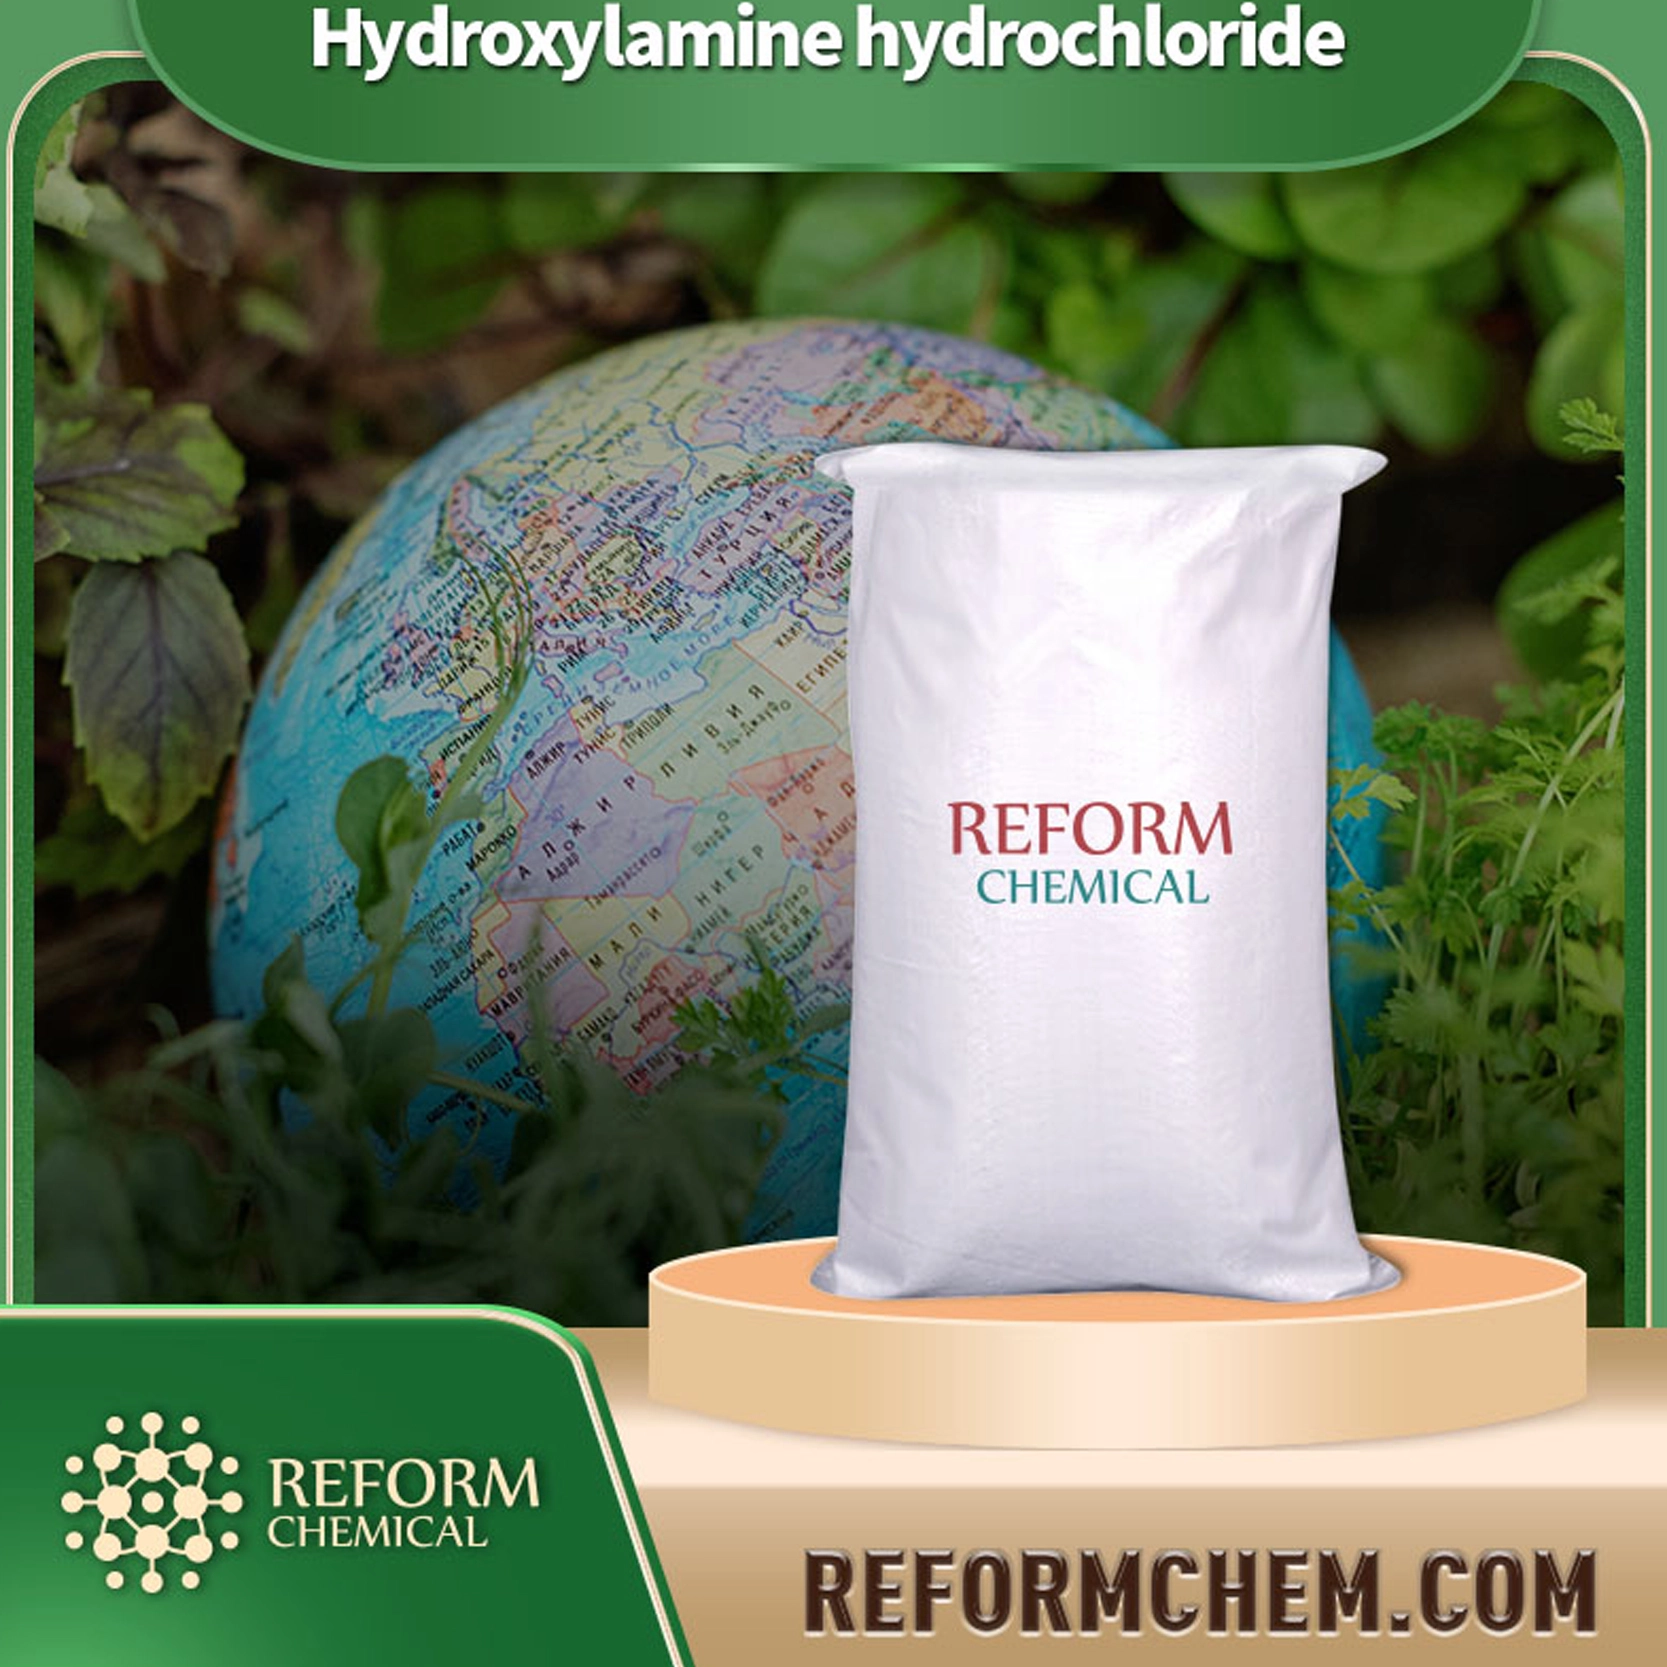 Hydroxylamine hydrochloride